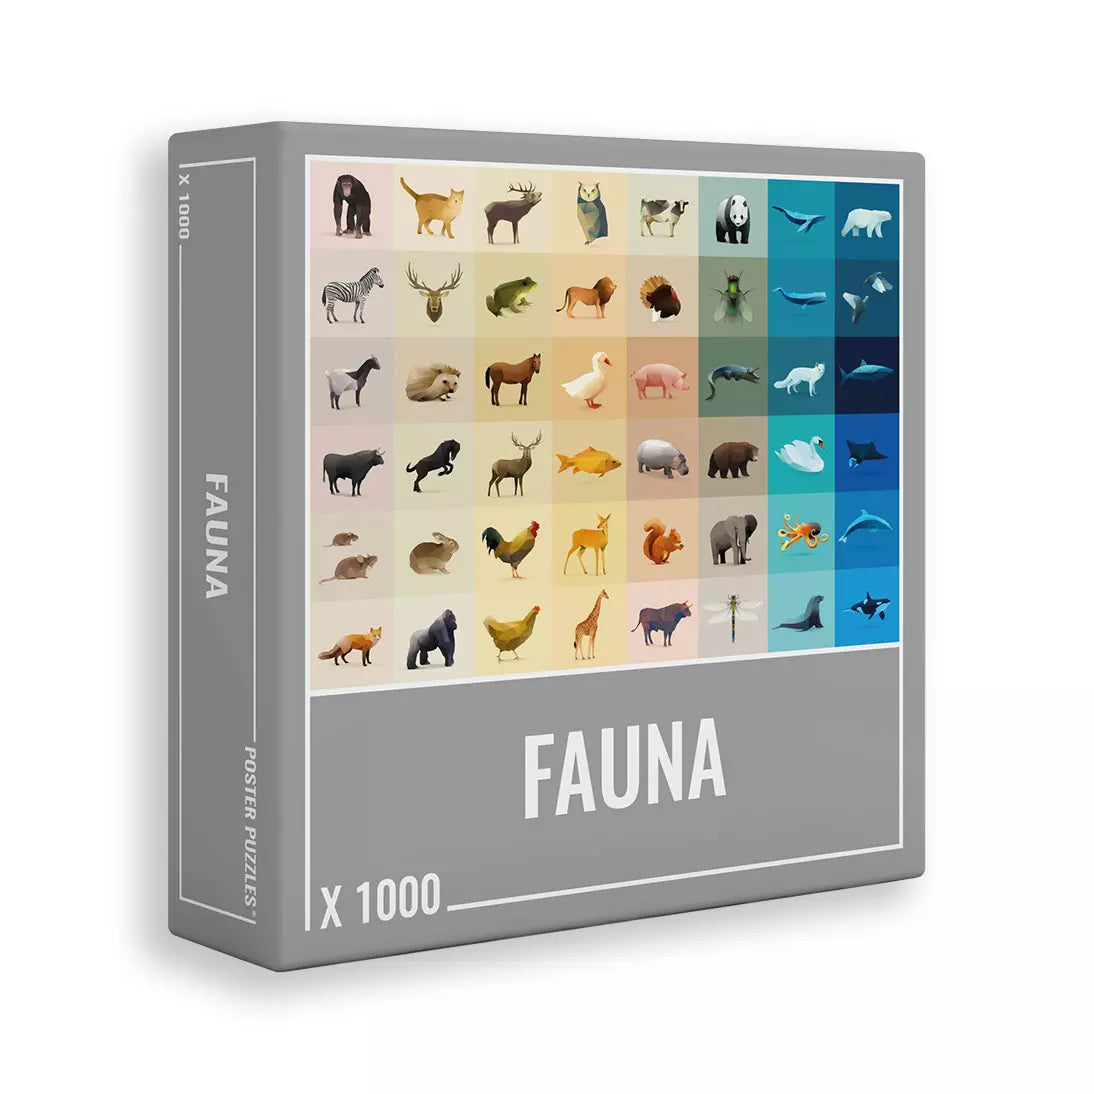 Fauna | 1,000 Piece Jigsaw Puzzle